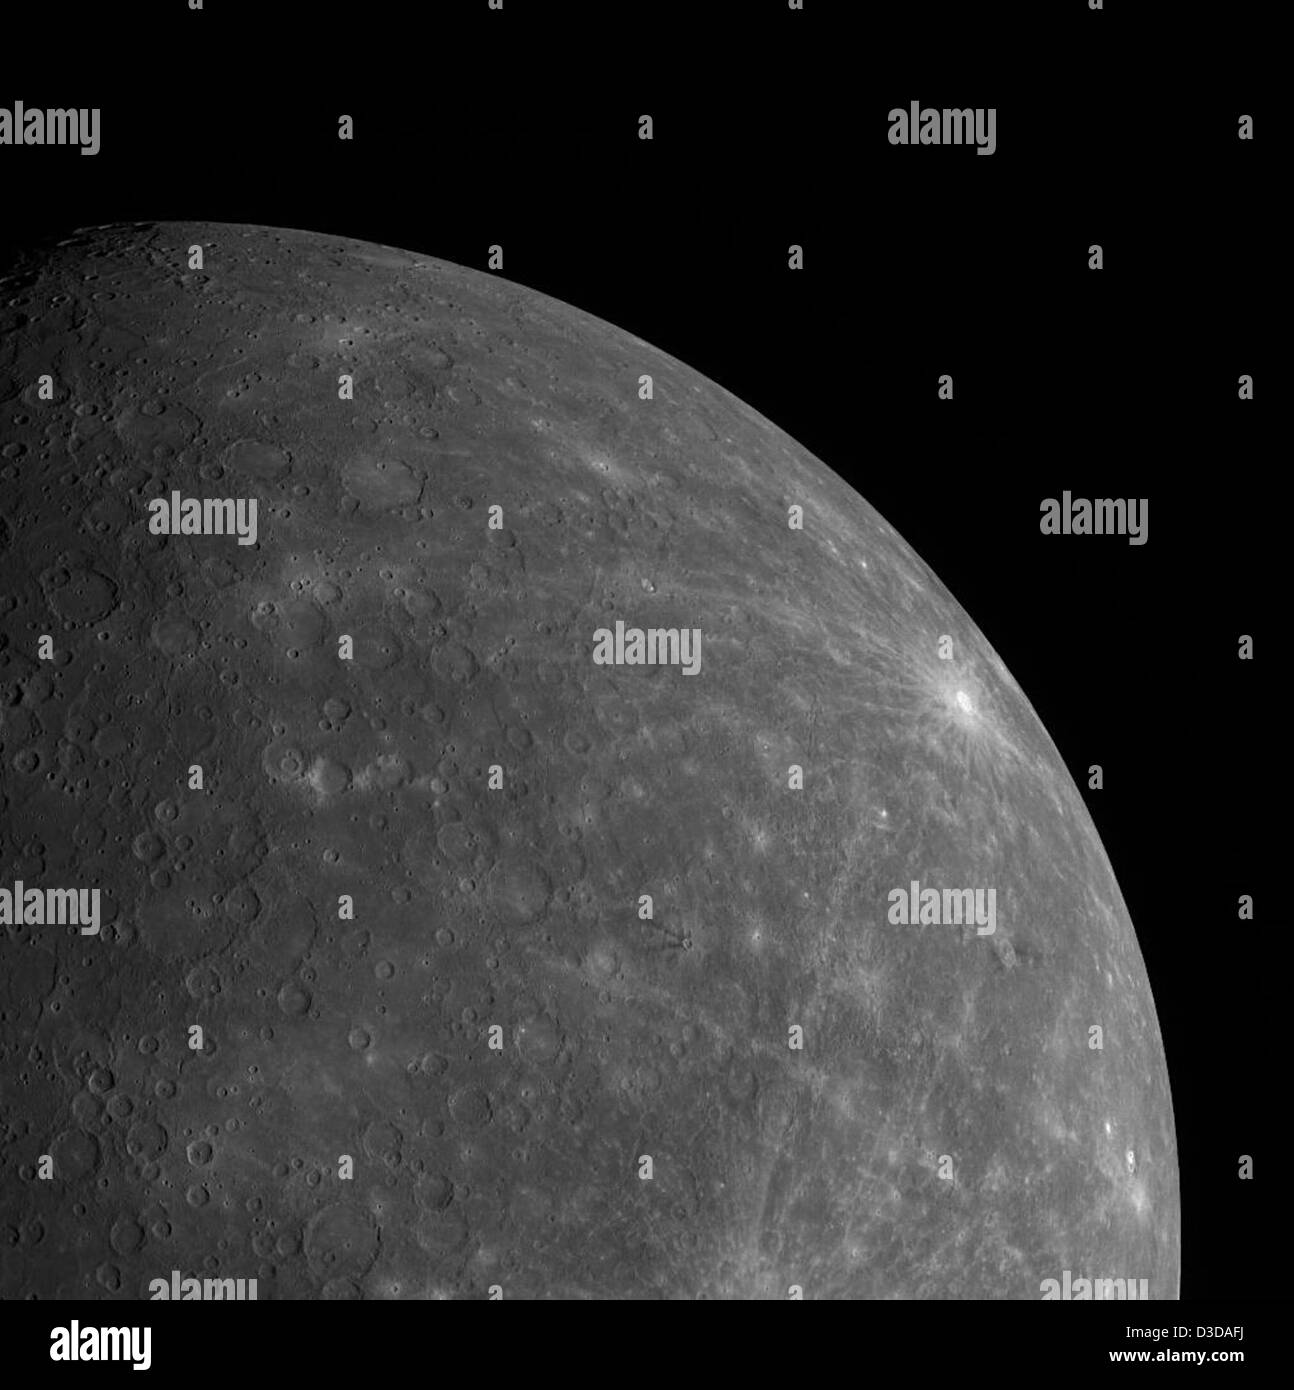 292 Lemon Lunar Images, Stock Photos, 3D objects, & Vectors